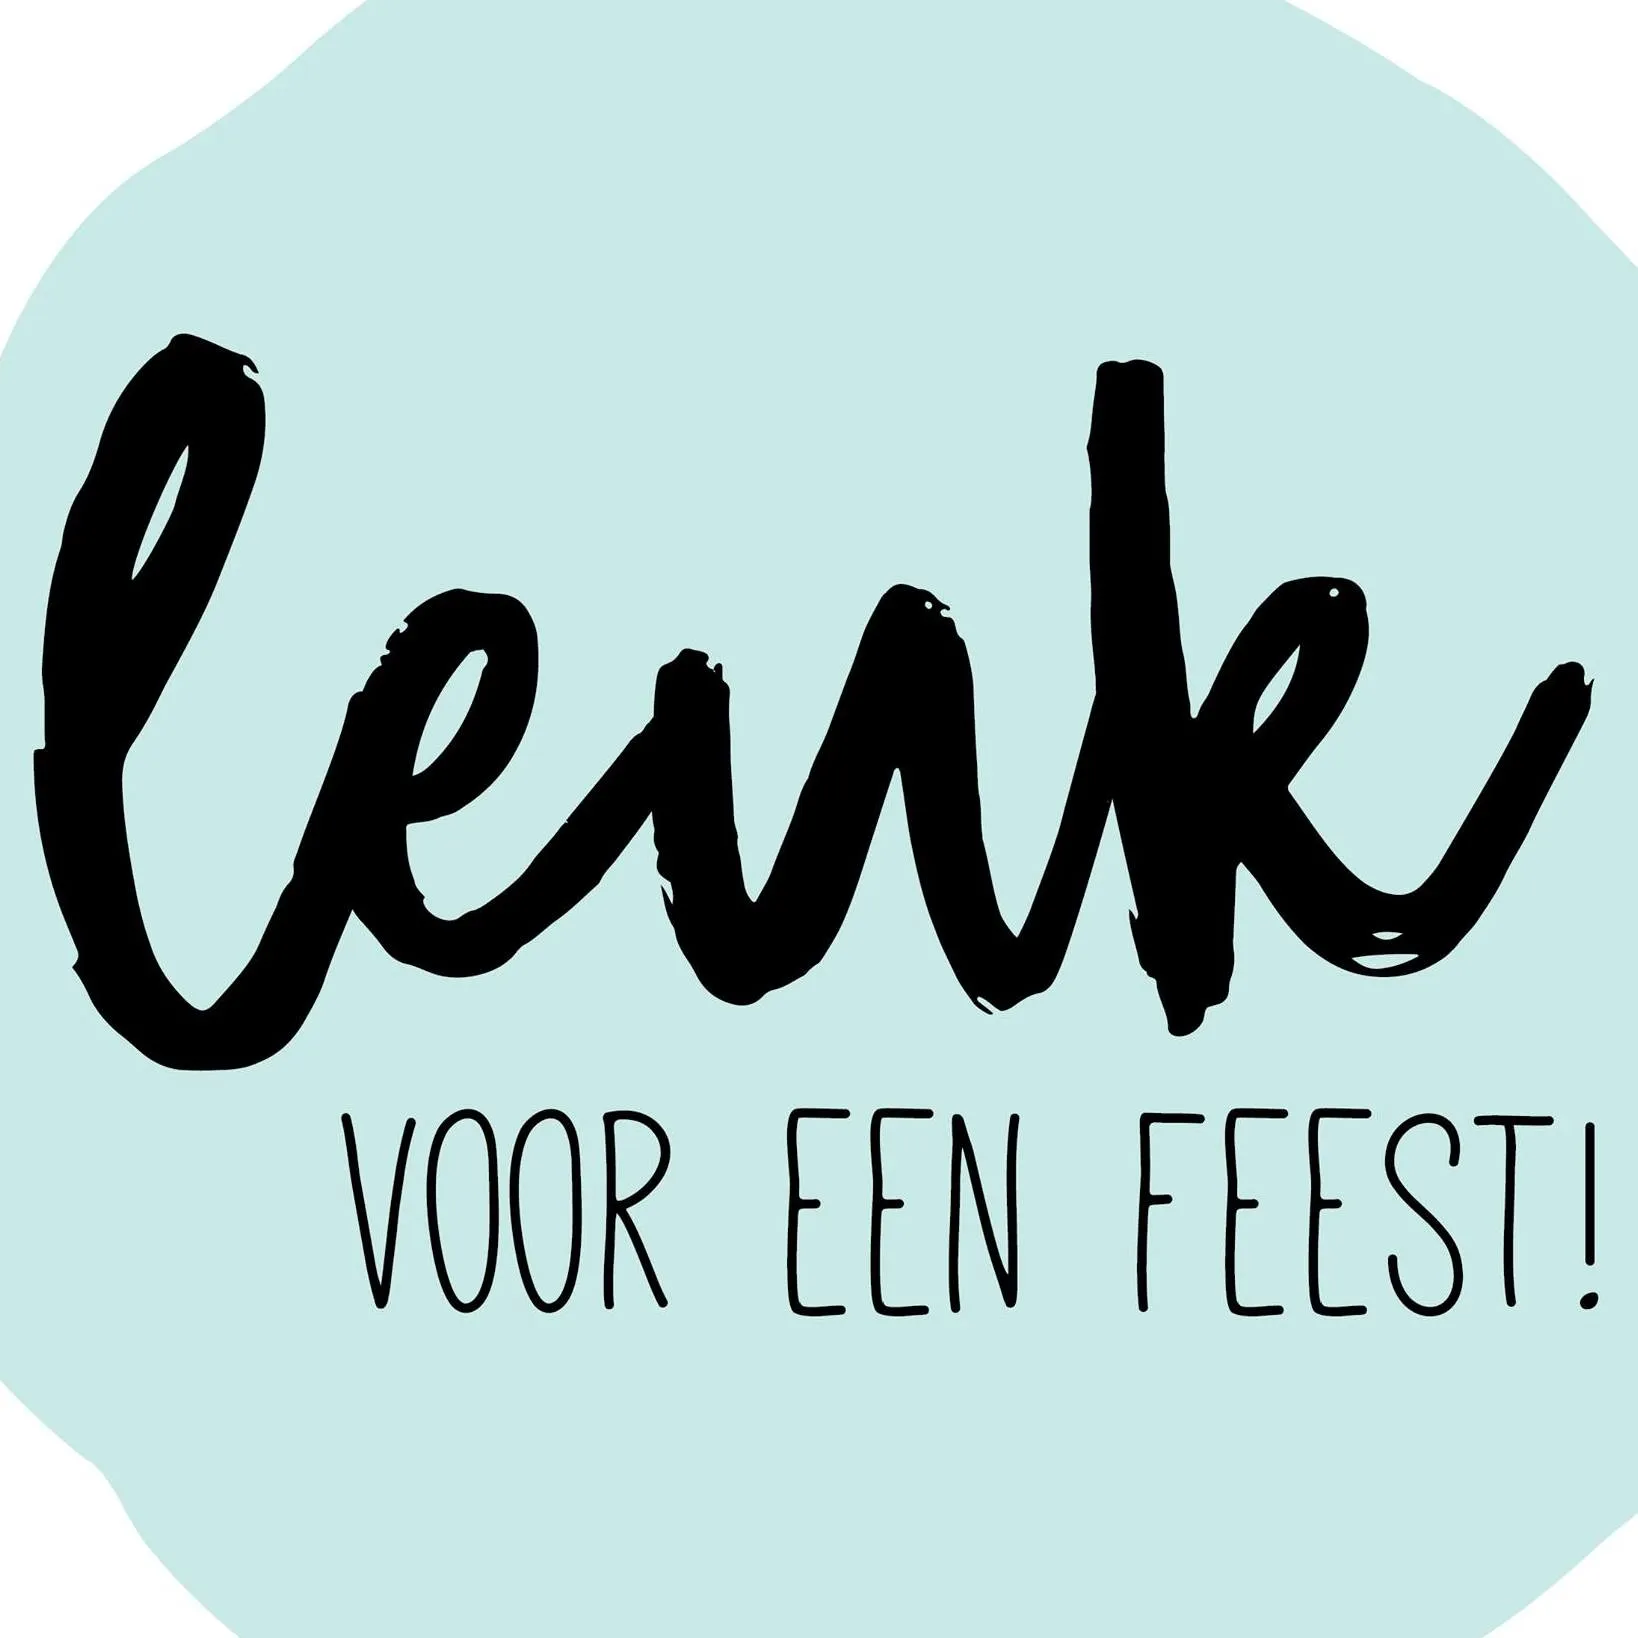 leukvooreenfeest.nl